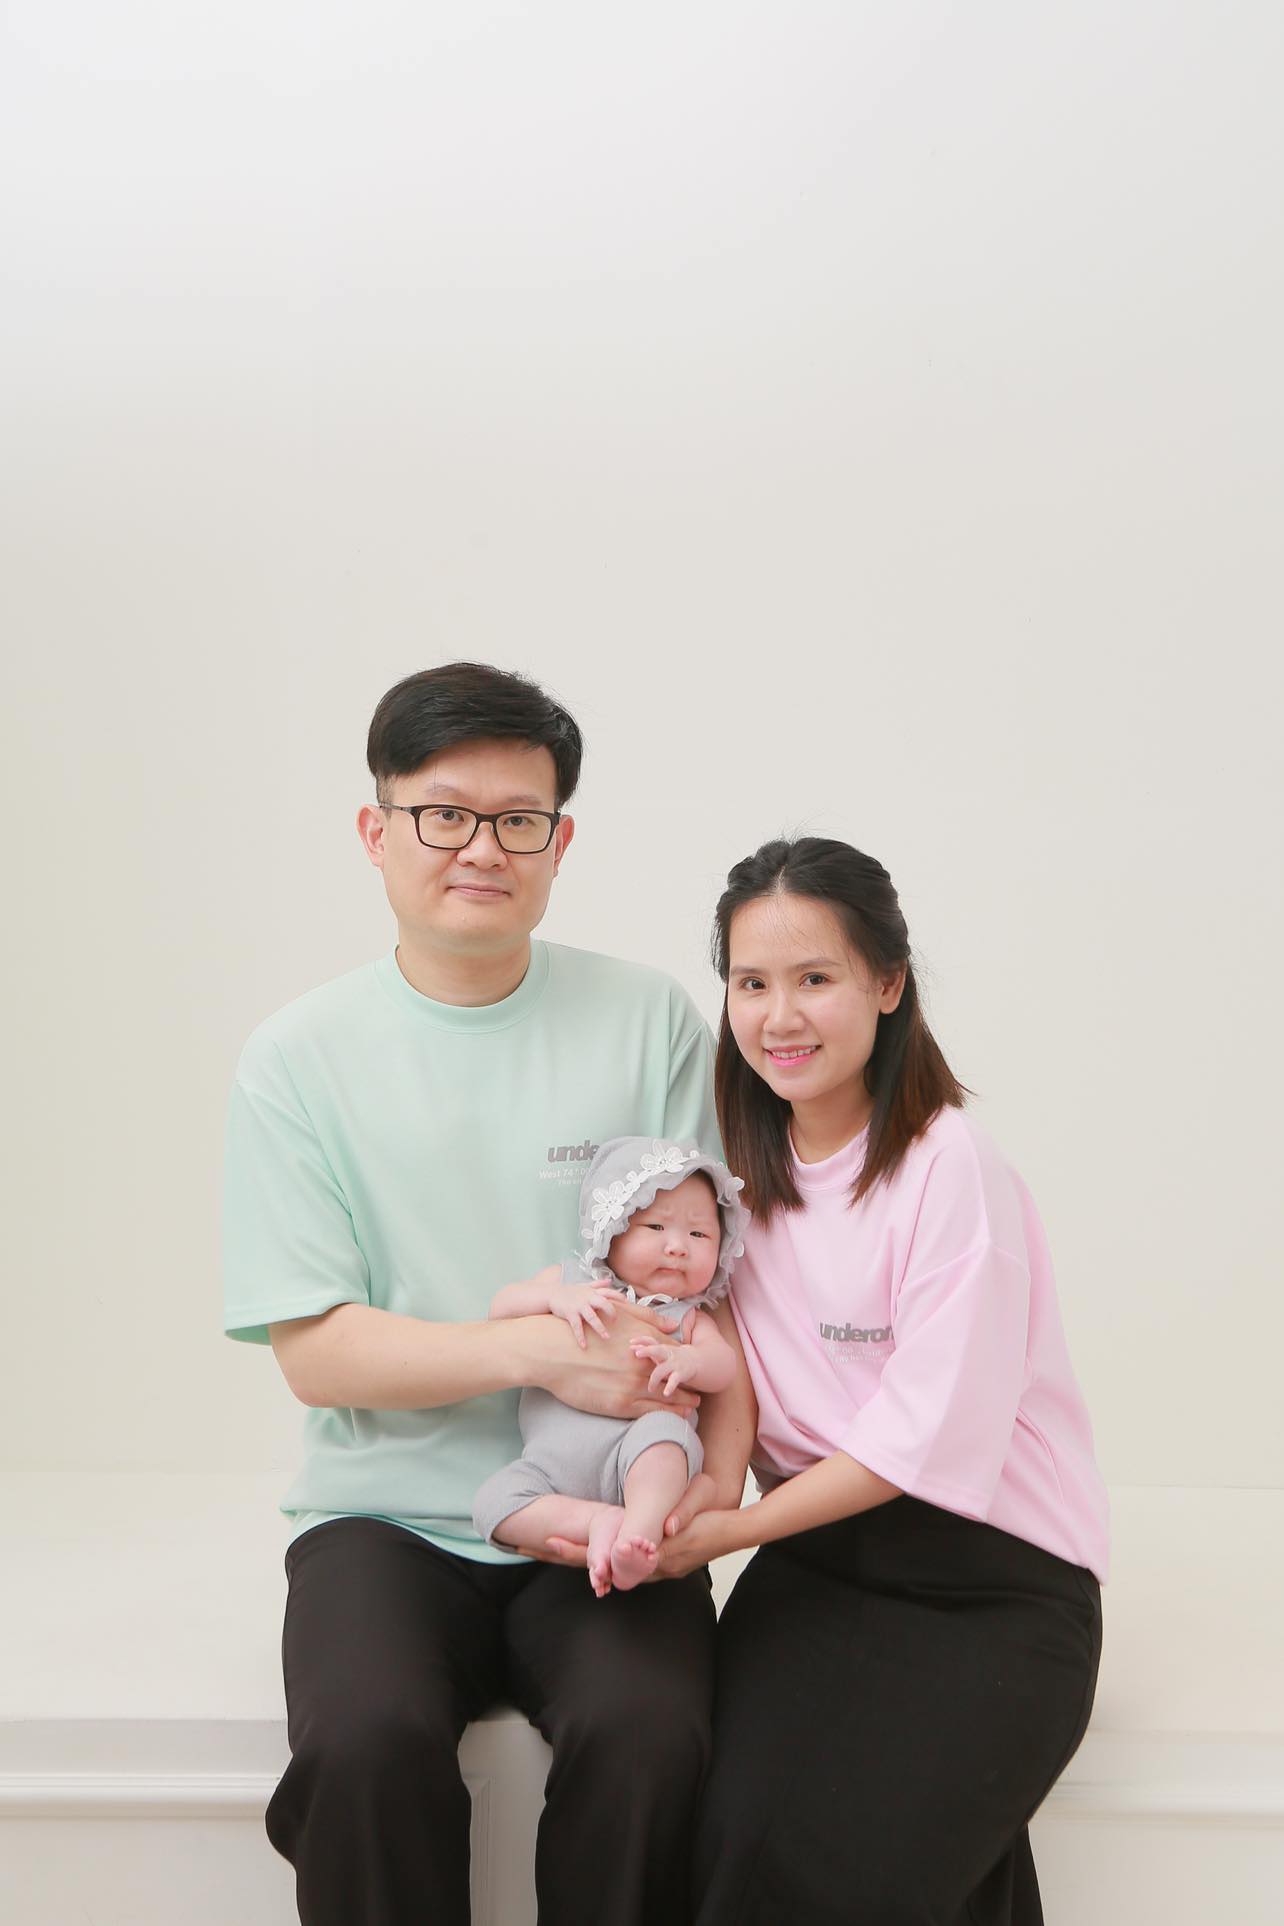 Cưới chú rể Hàn Quốc, cô gái gặp mẹ chồng cực phẩm: Chăm sóc từ A đến Z, học nấu cả món Việt Nam để con dâu đỡ nhớ nhà - Ảnh 1.